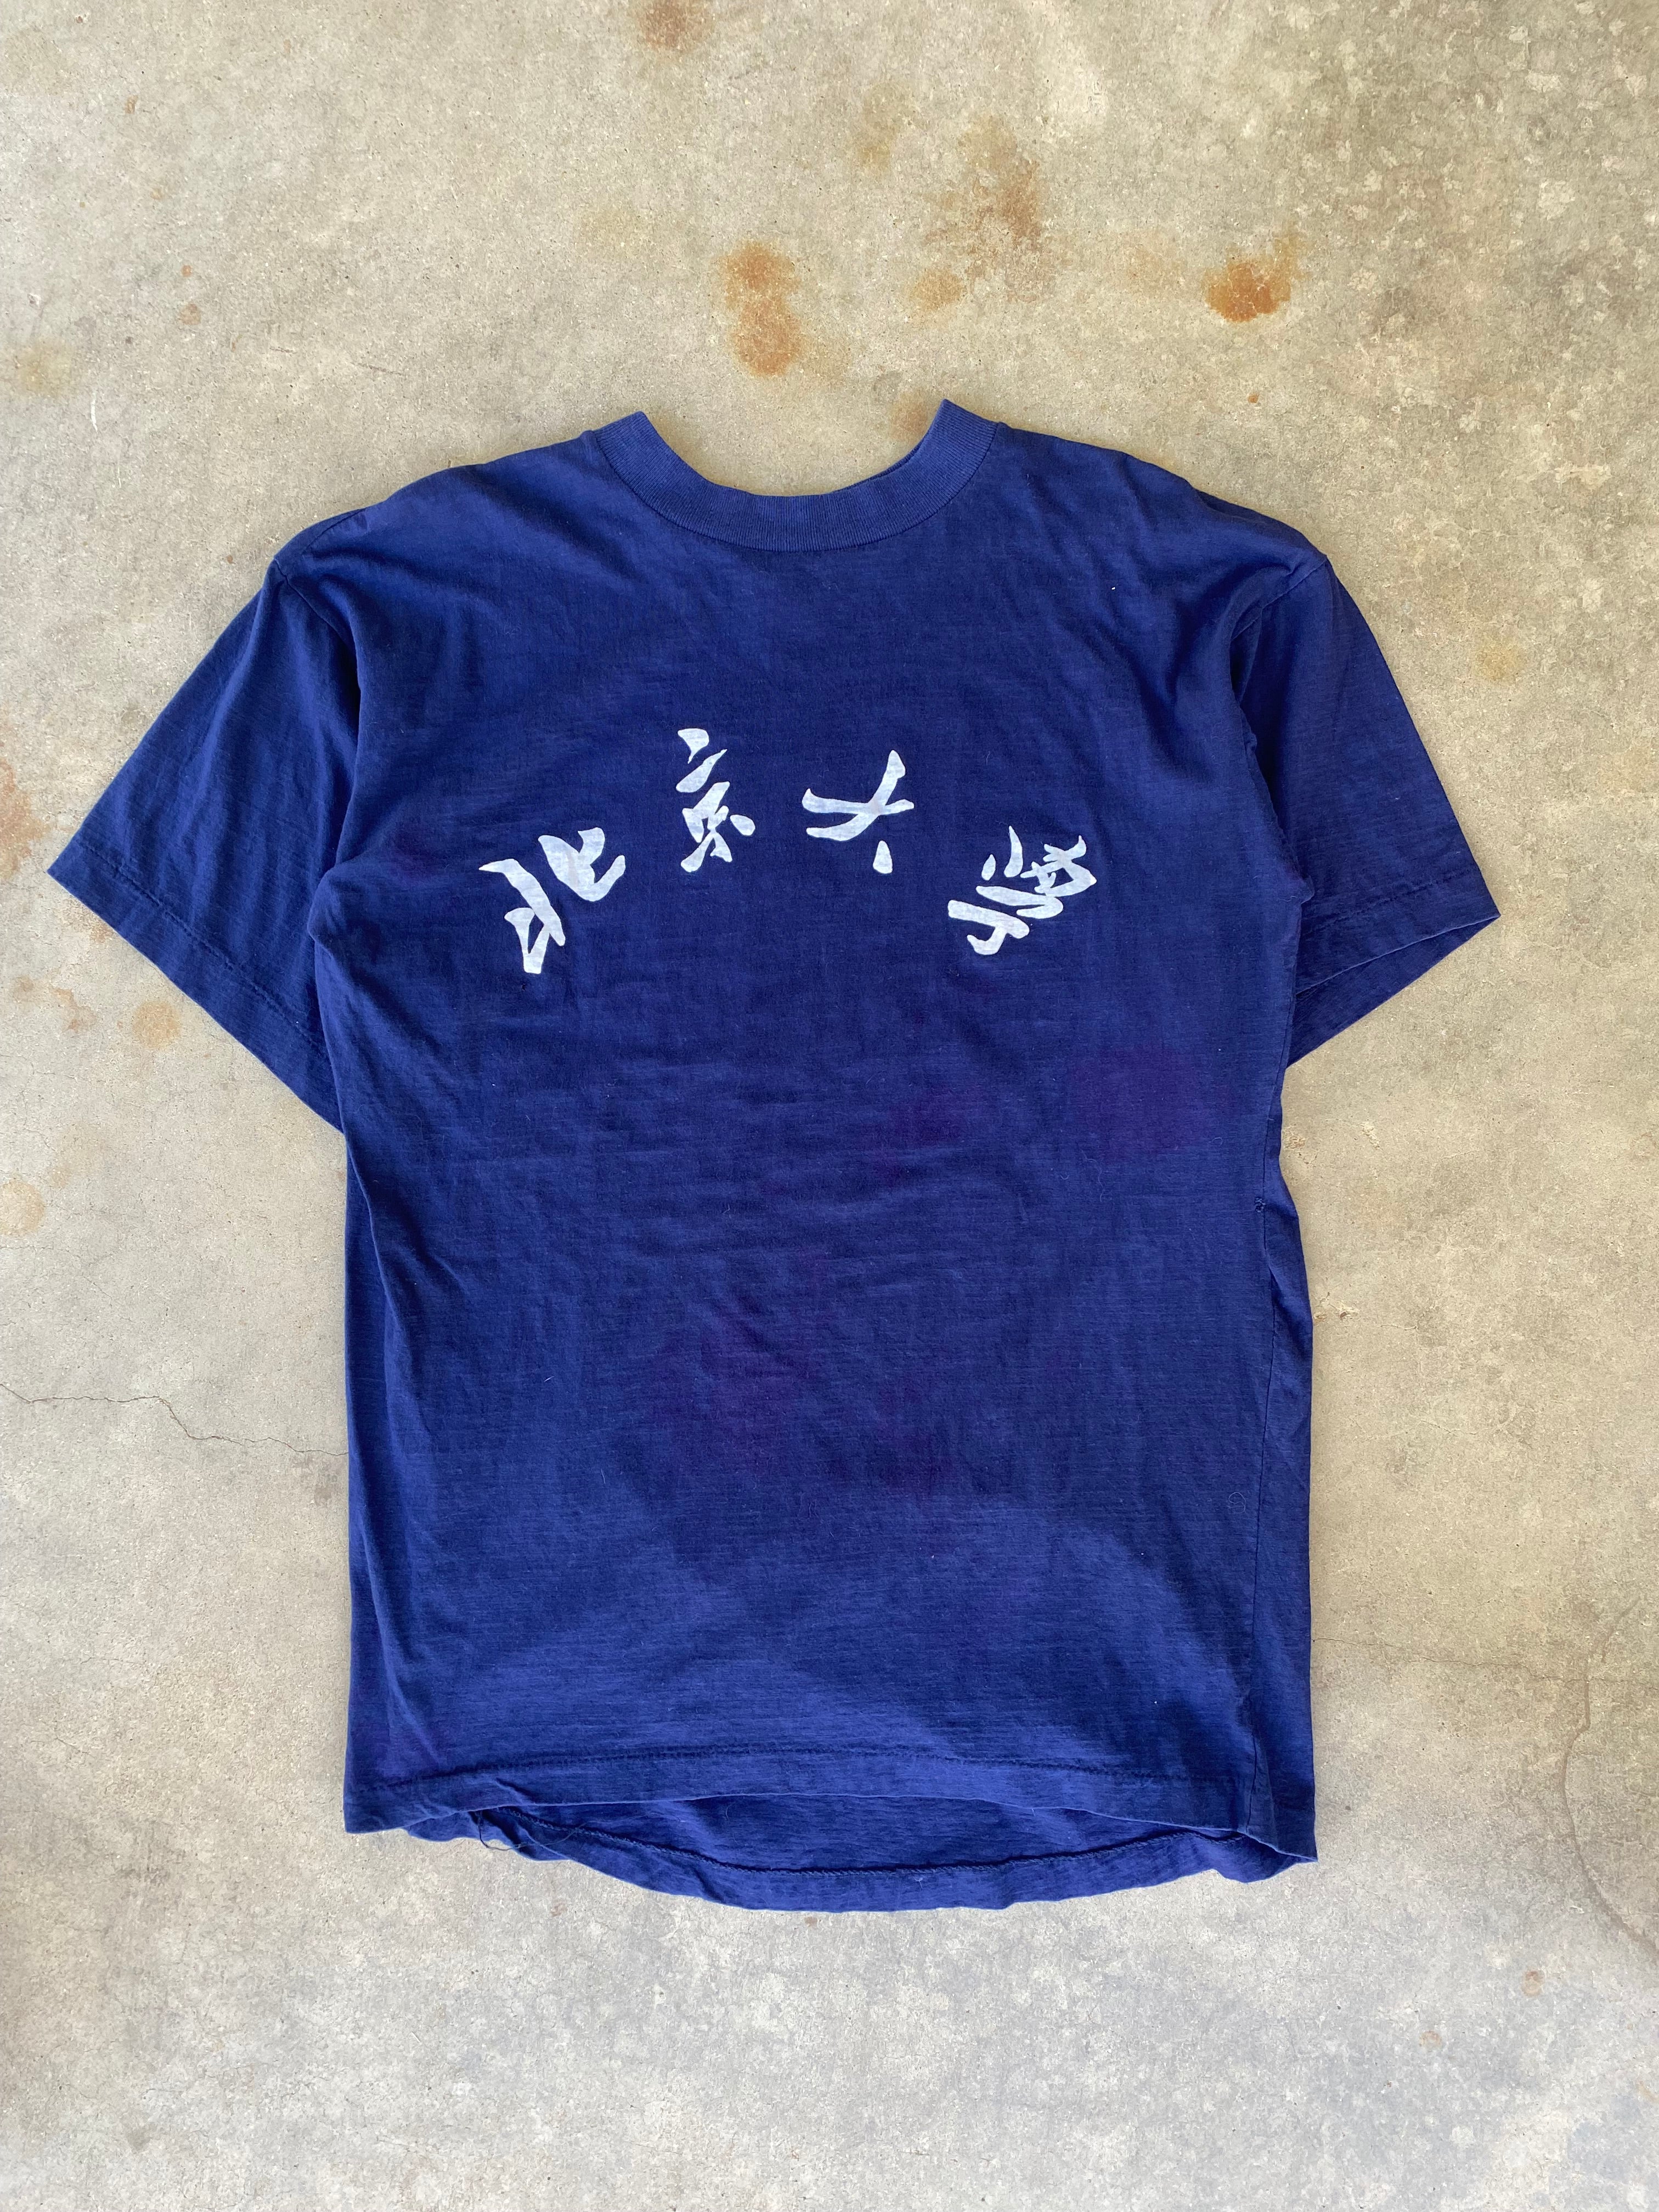 1980s Peking University T-Shirt (L)